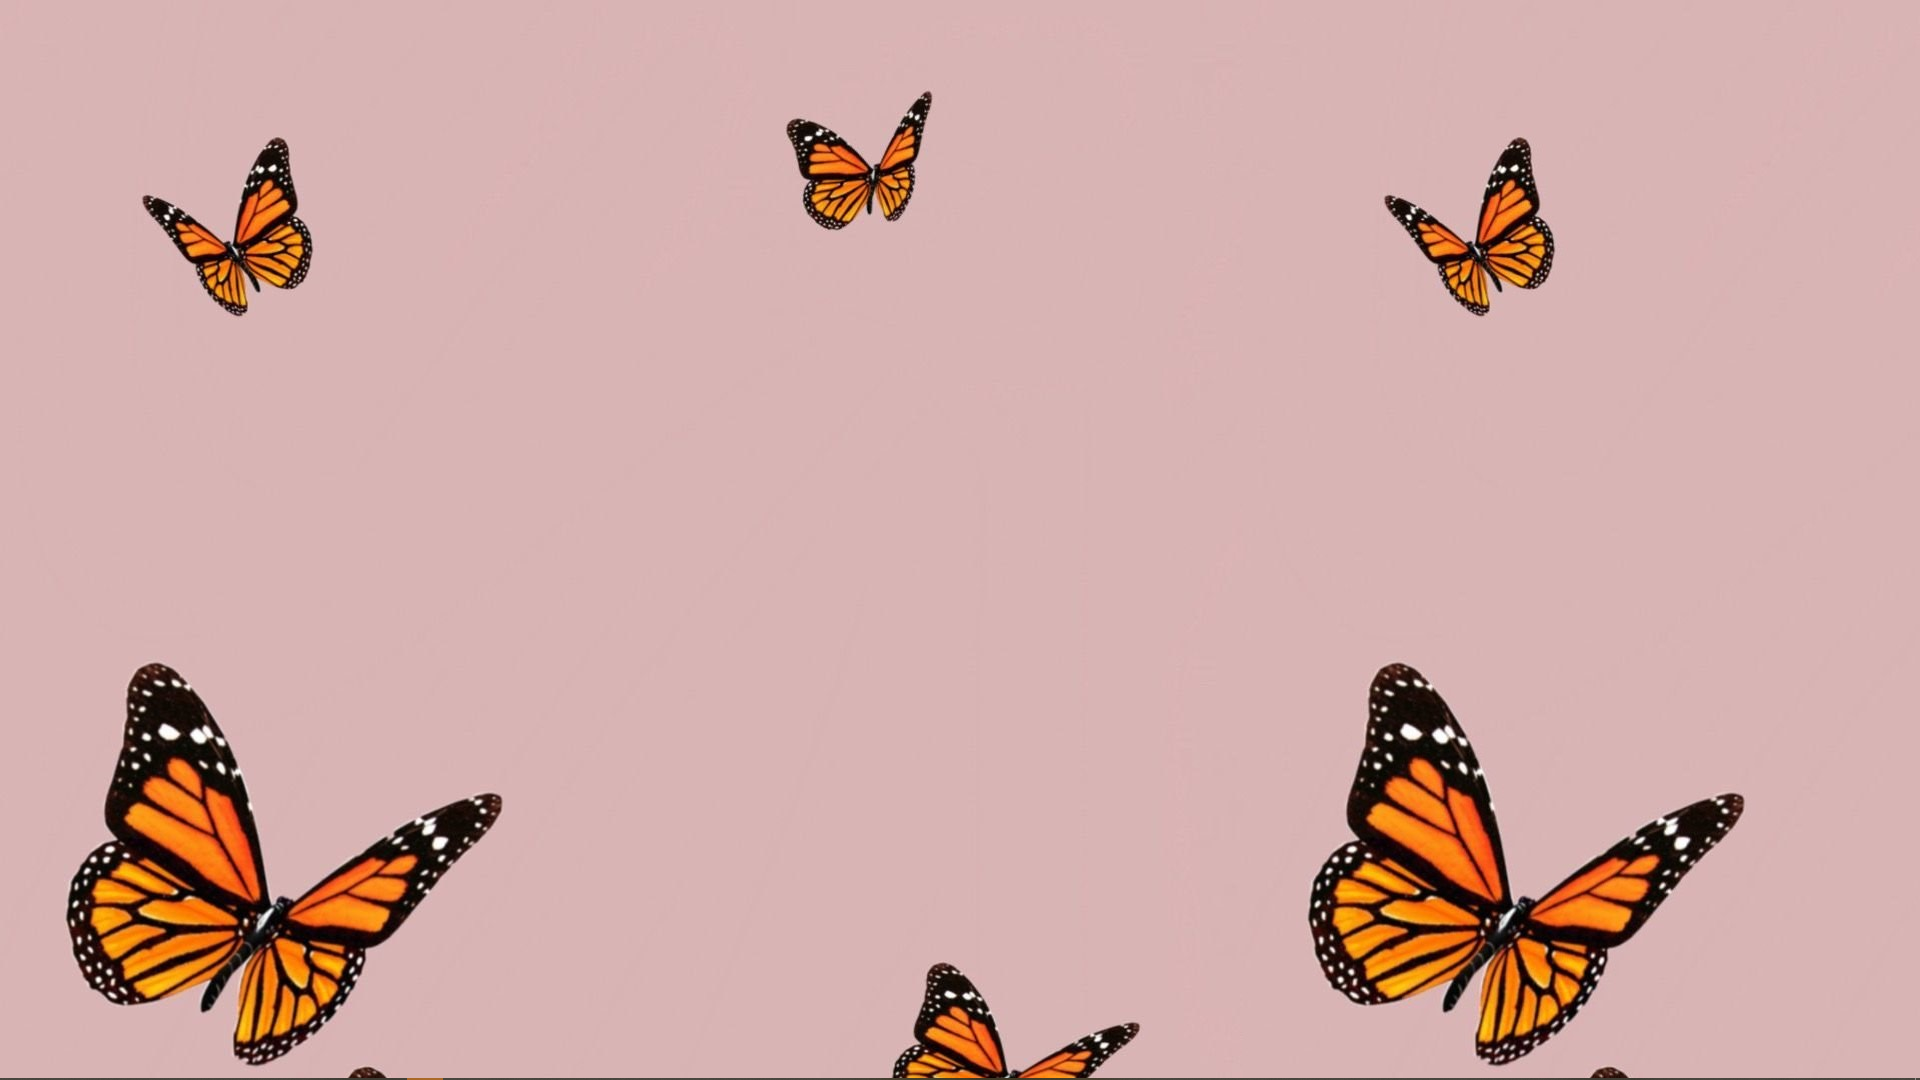 Butterfly Aesthetic Desktop Wallpaper Free Butterfly Aesthetic Desktop Background